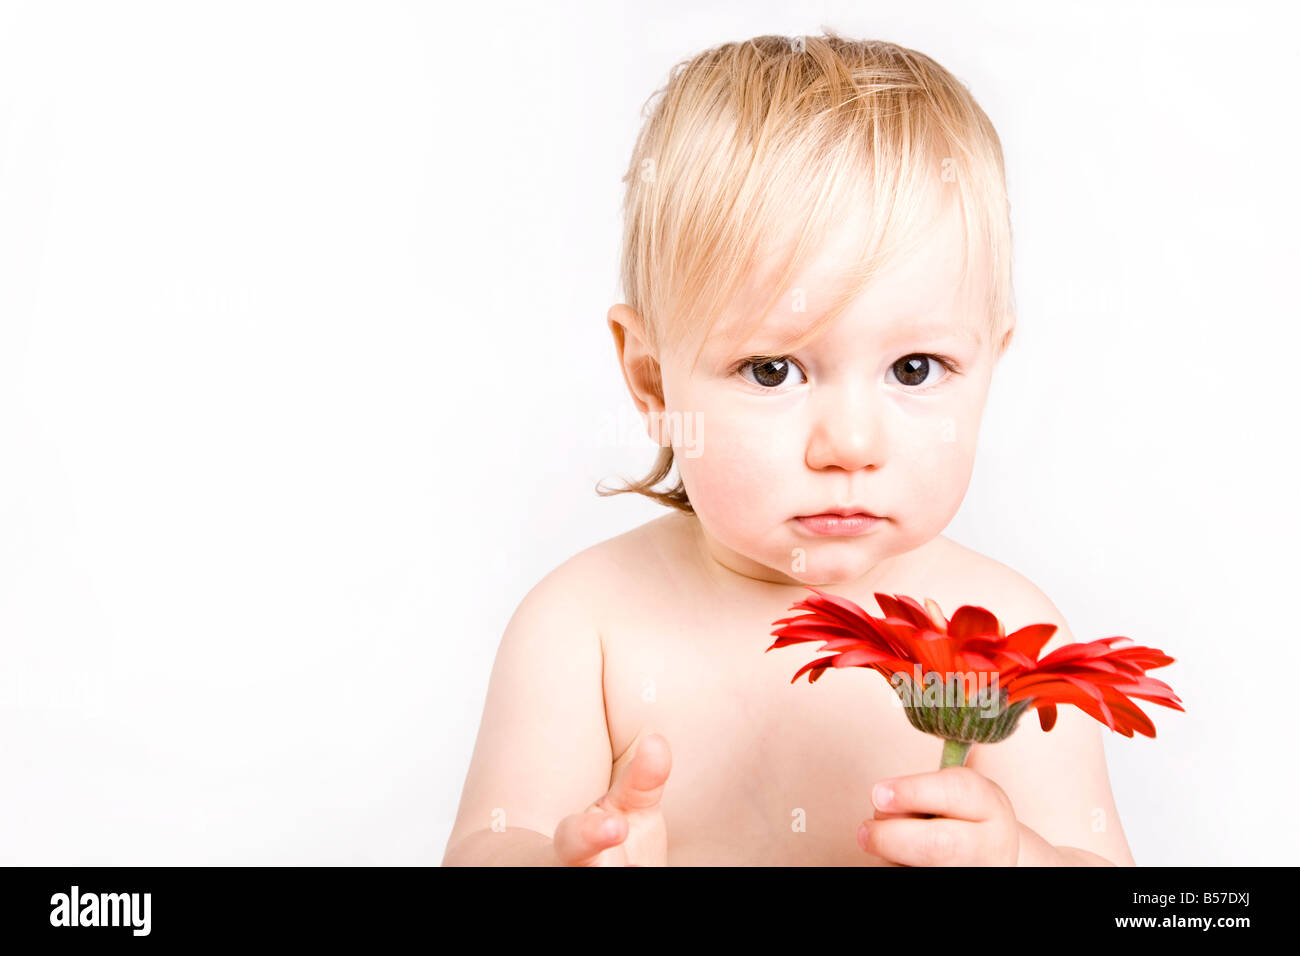 1 year old caucasion female child / baby holding red flower with white background England United Kingdom UK Europe EU Stock Photo